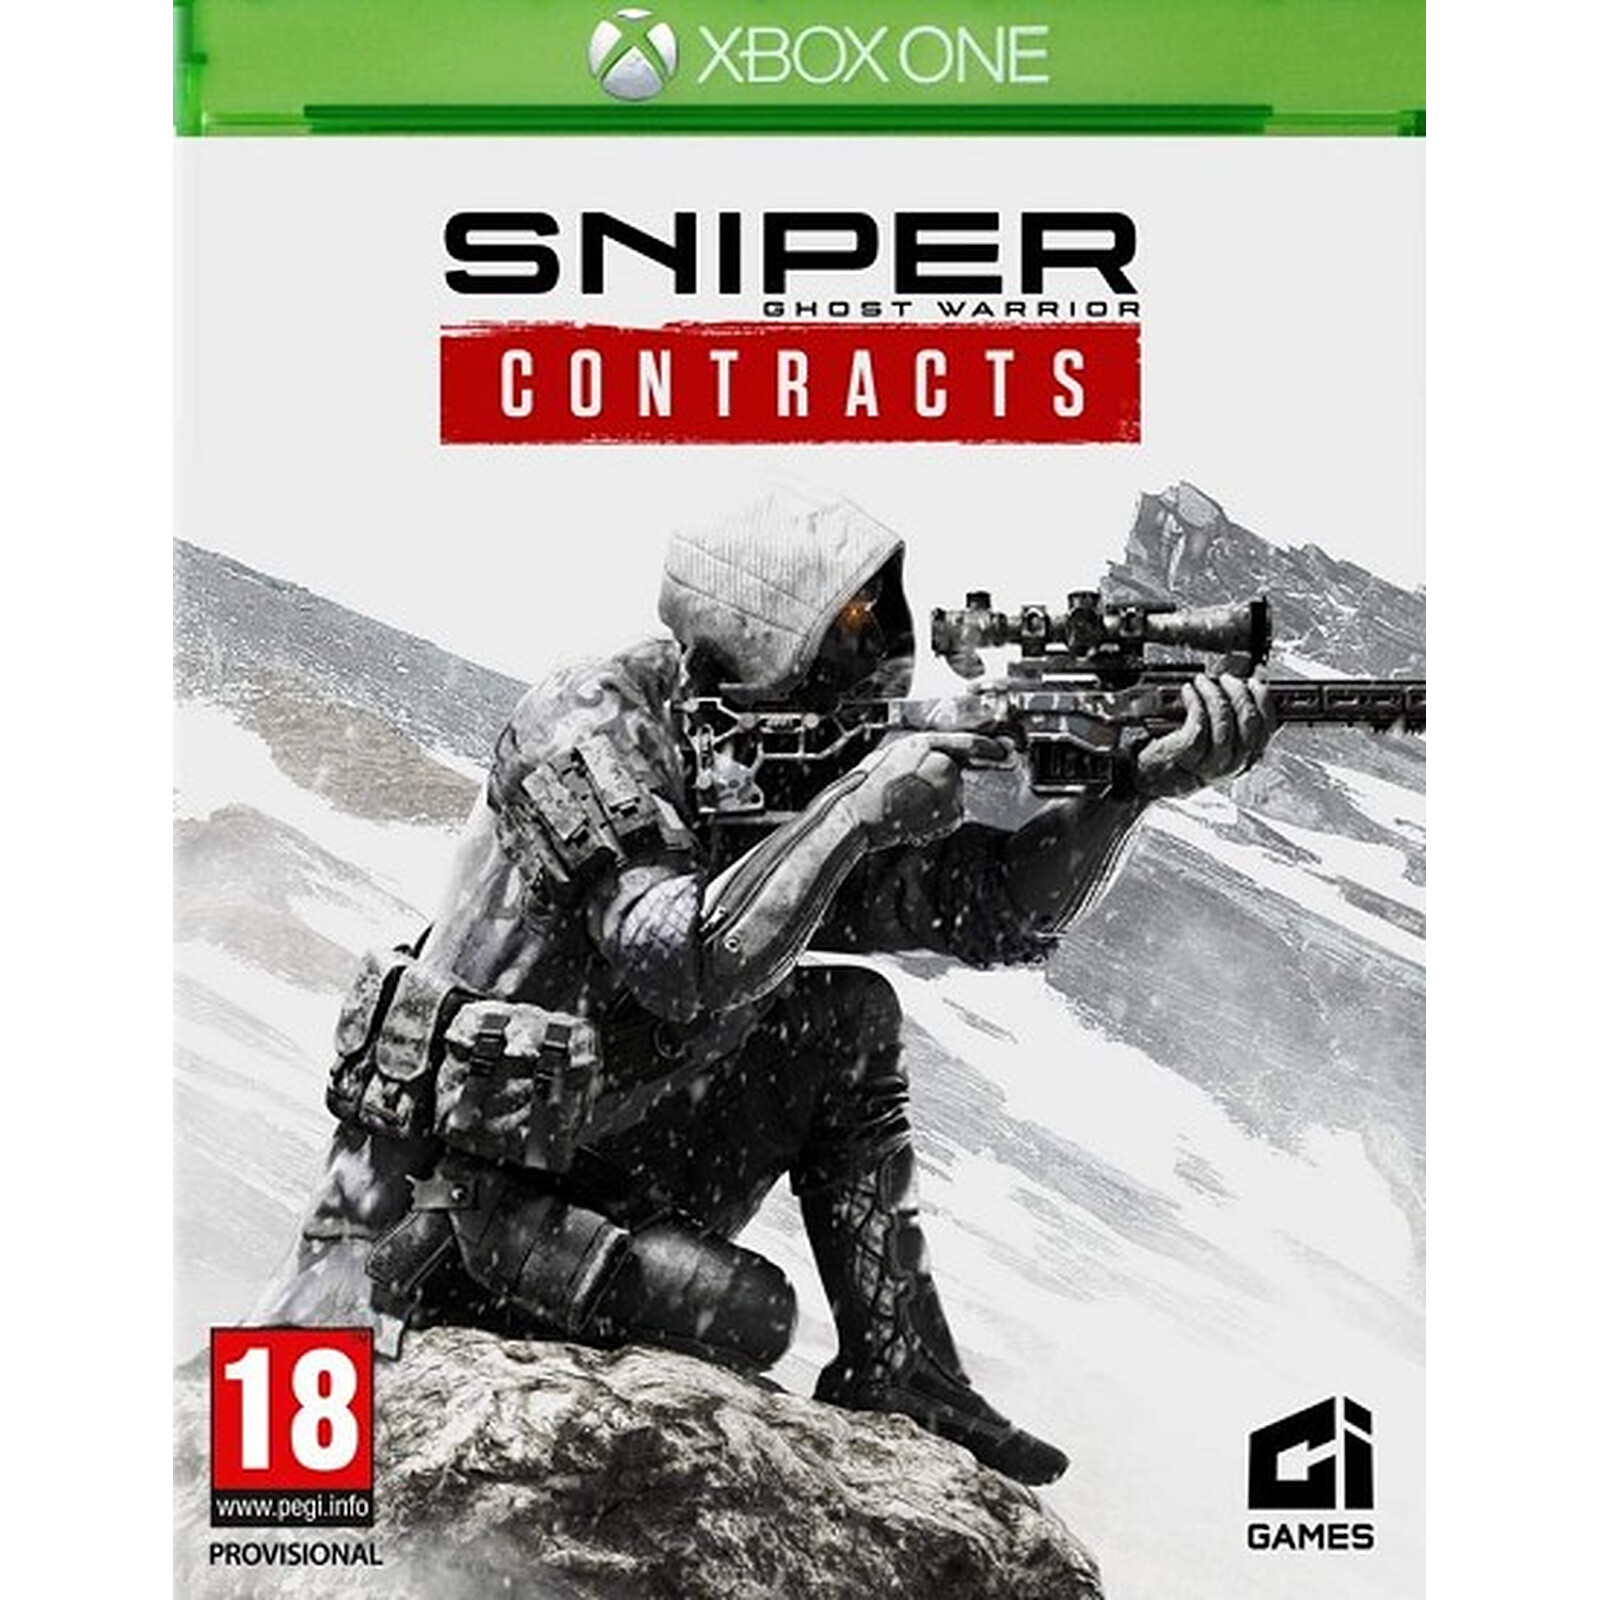 Игра снайпер купить. Снайпер воин призрак Xbox 360. Снайпер контракт для хбокс 1. Sniper Ghost Warrior 3 обложка.